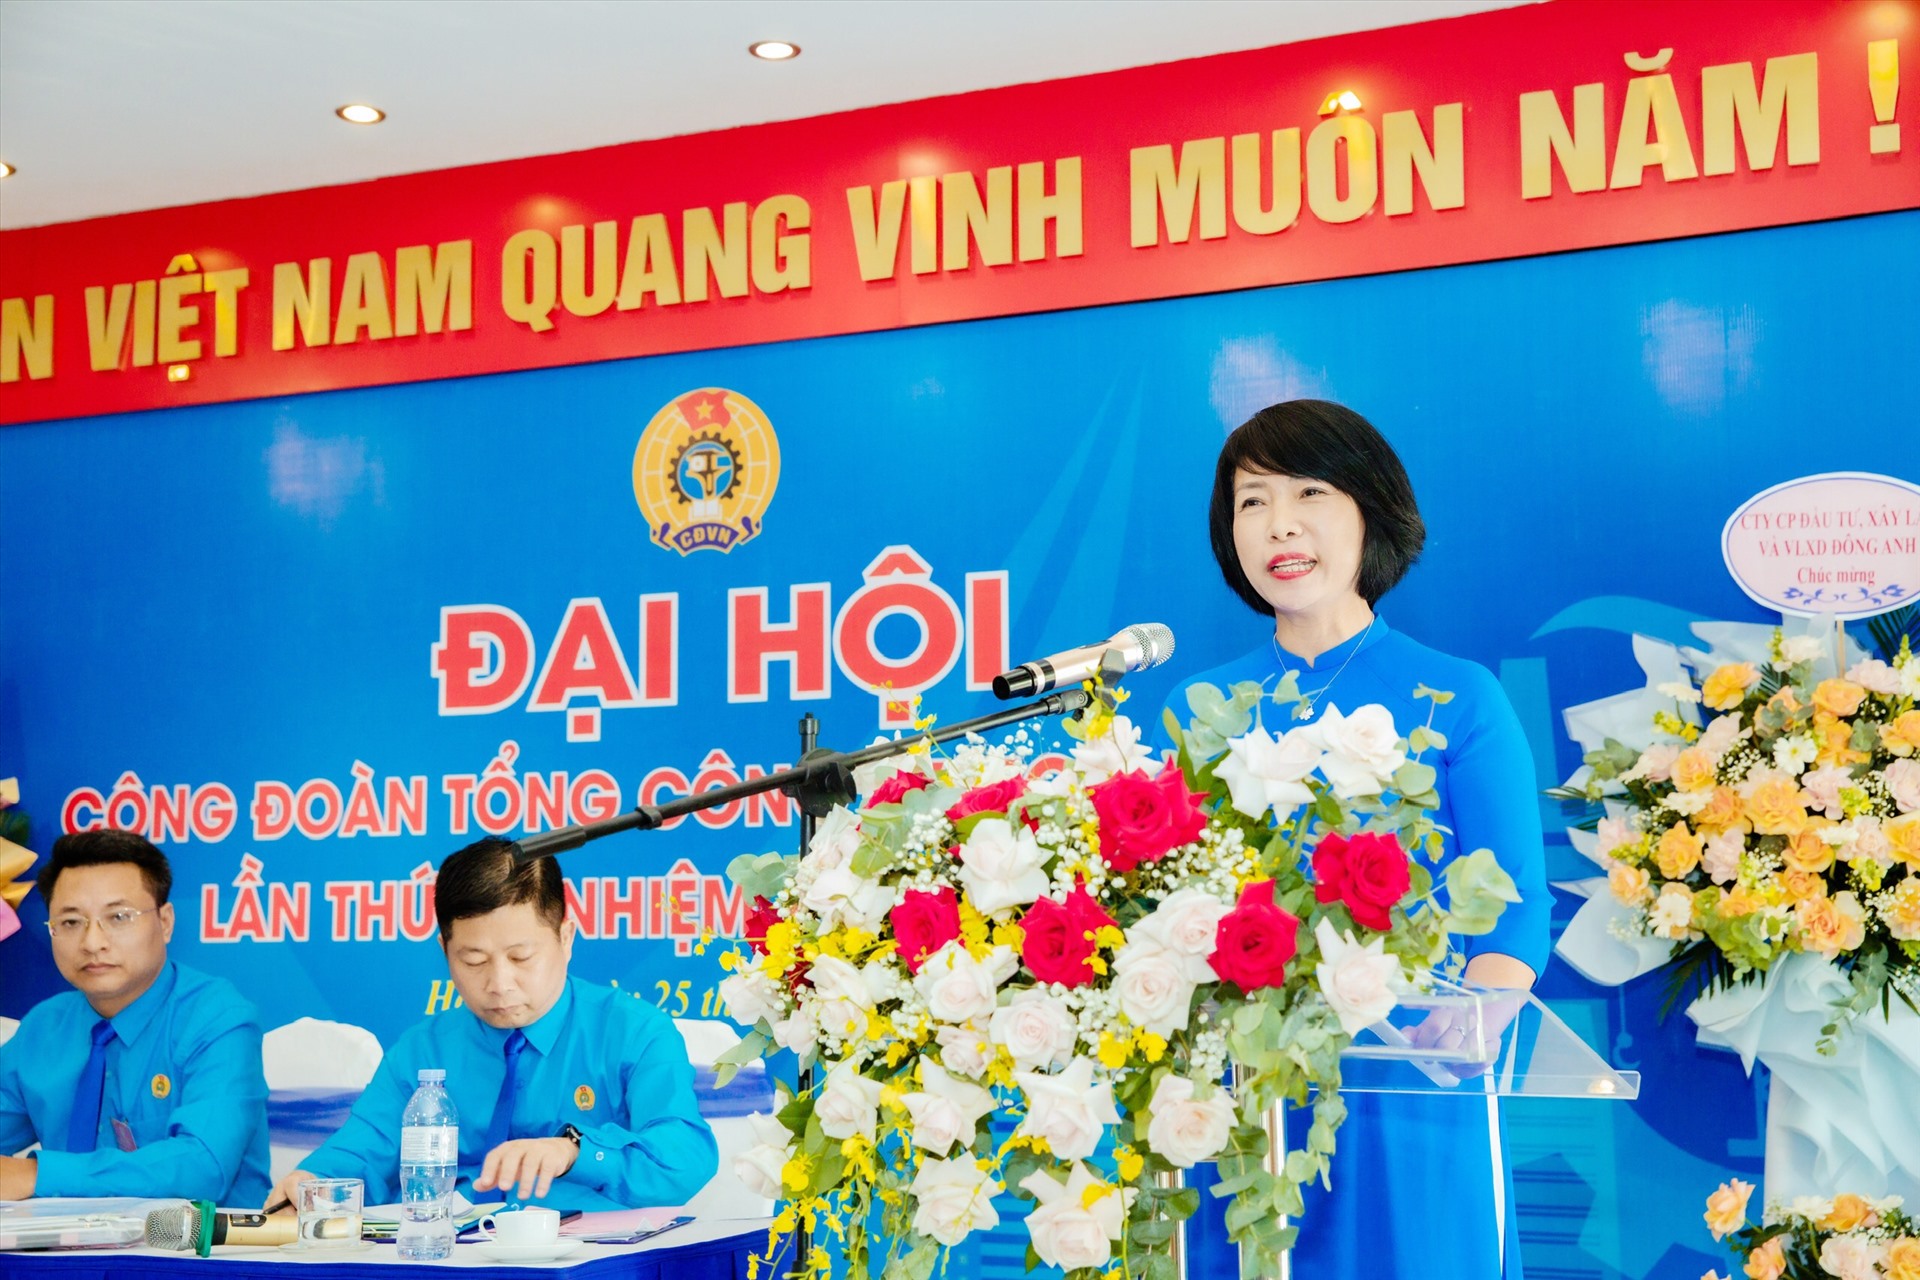 Bà Nguyễn Thị Thủy Lệ - Chủ tịch Công đoàn Xây dựng Việt Nam - phát biểu chỉ đạo đại hội. Ảnh: Công đoàn LICOGI